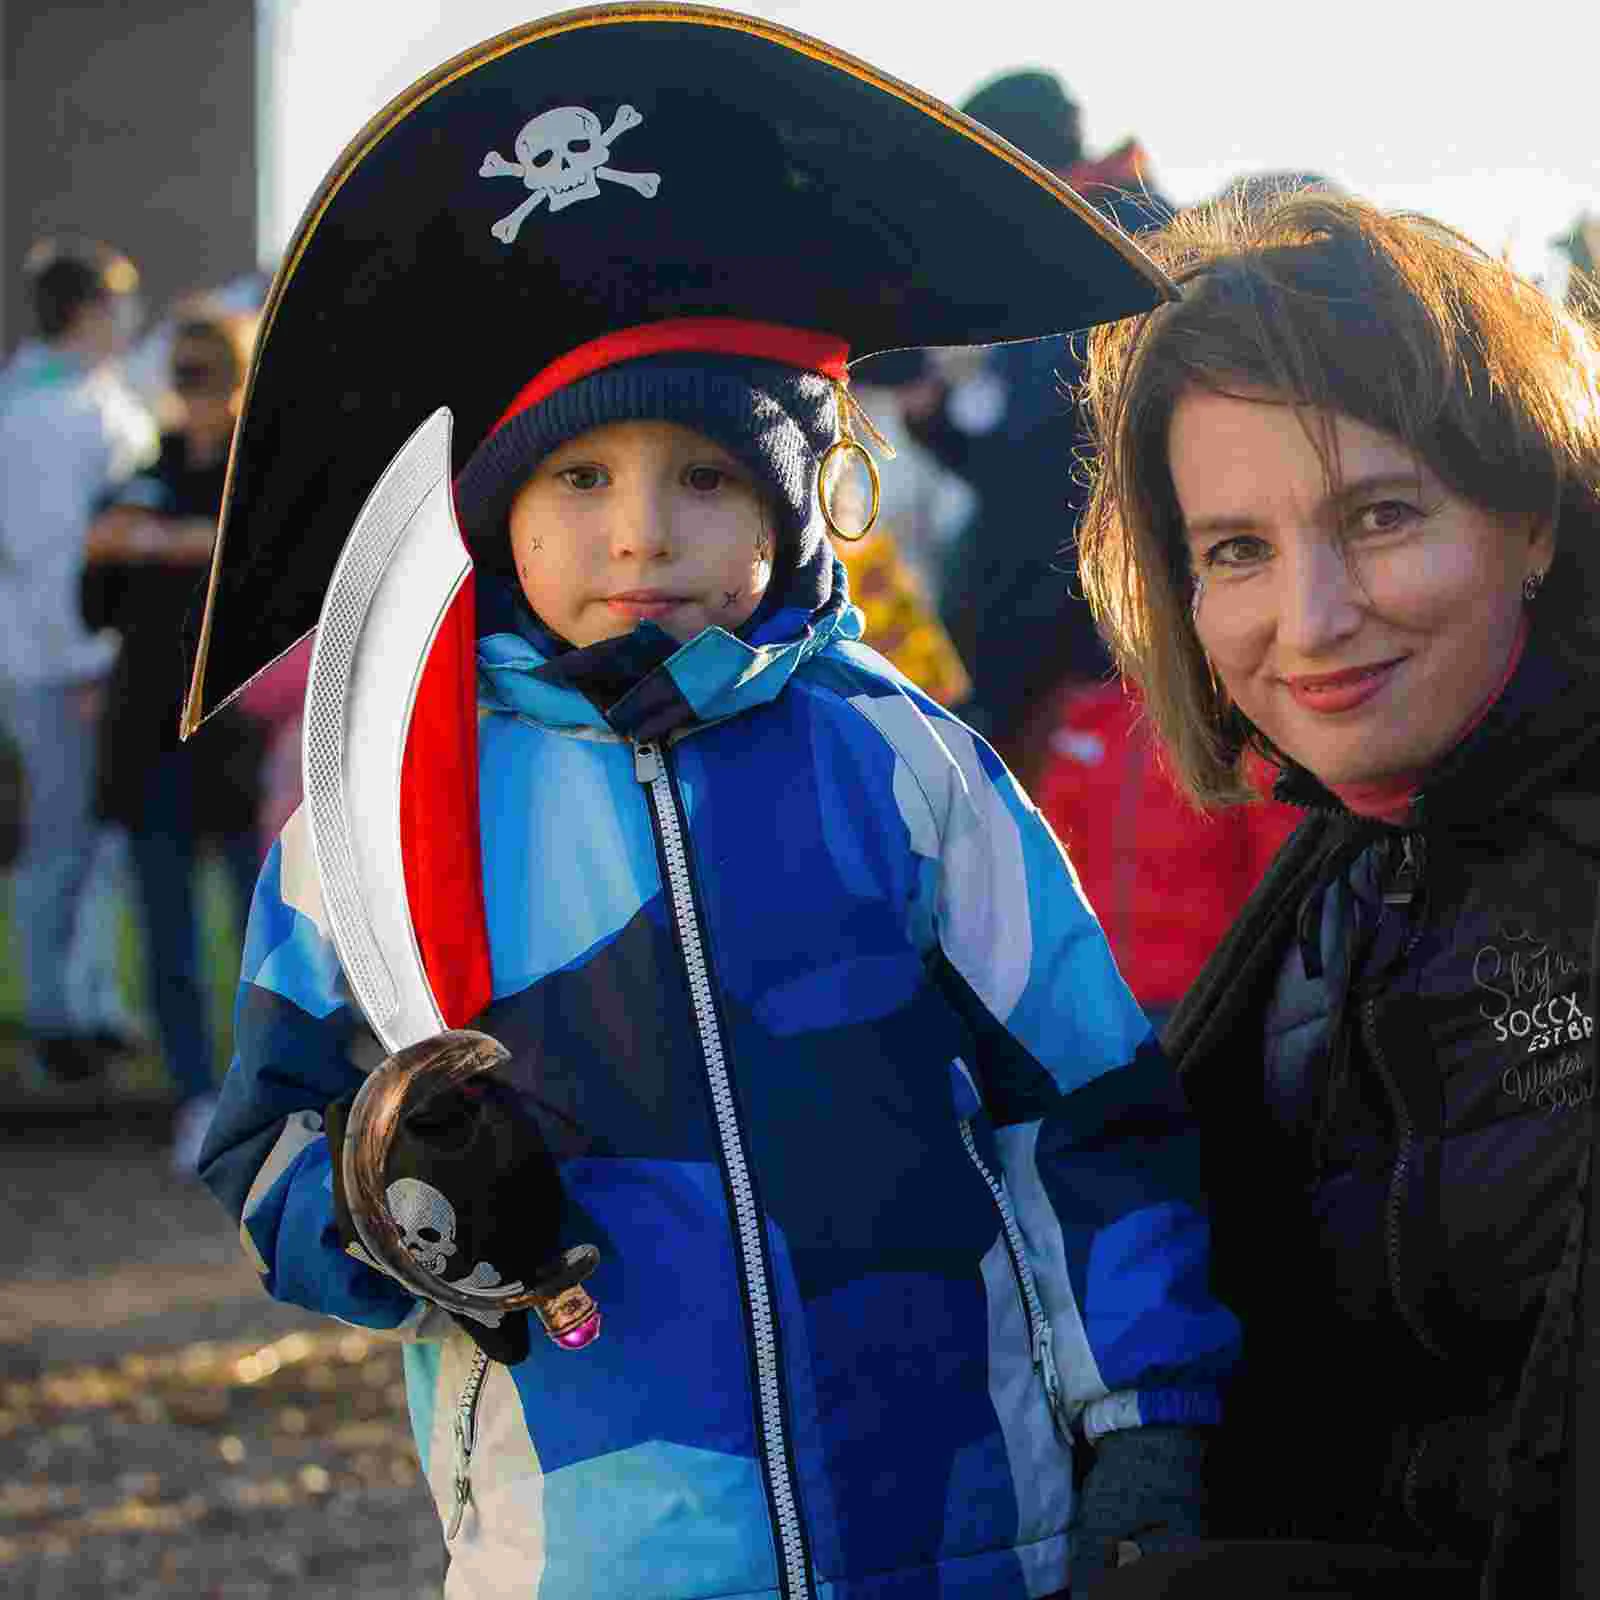 Giocattoli coltello pirata spade Plaything per oggetti di scena di Halloween bambini e artigianato foto Cosplay Festival bambino